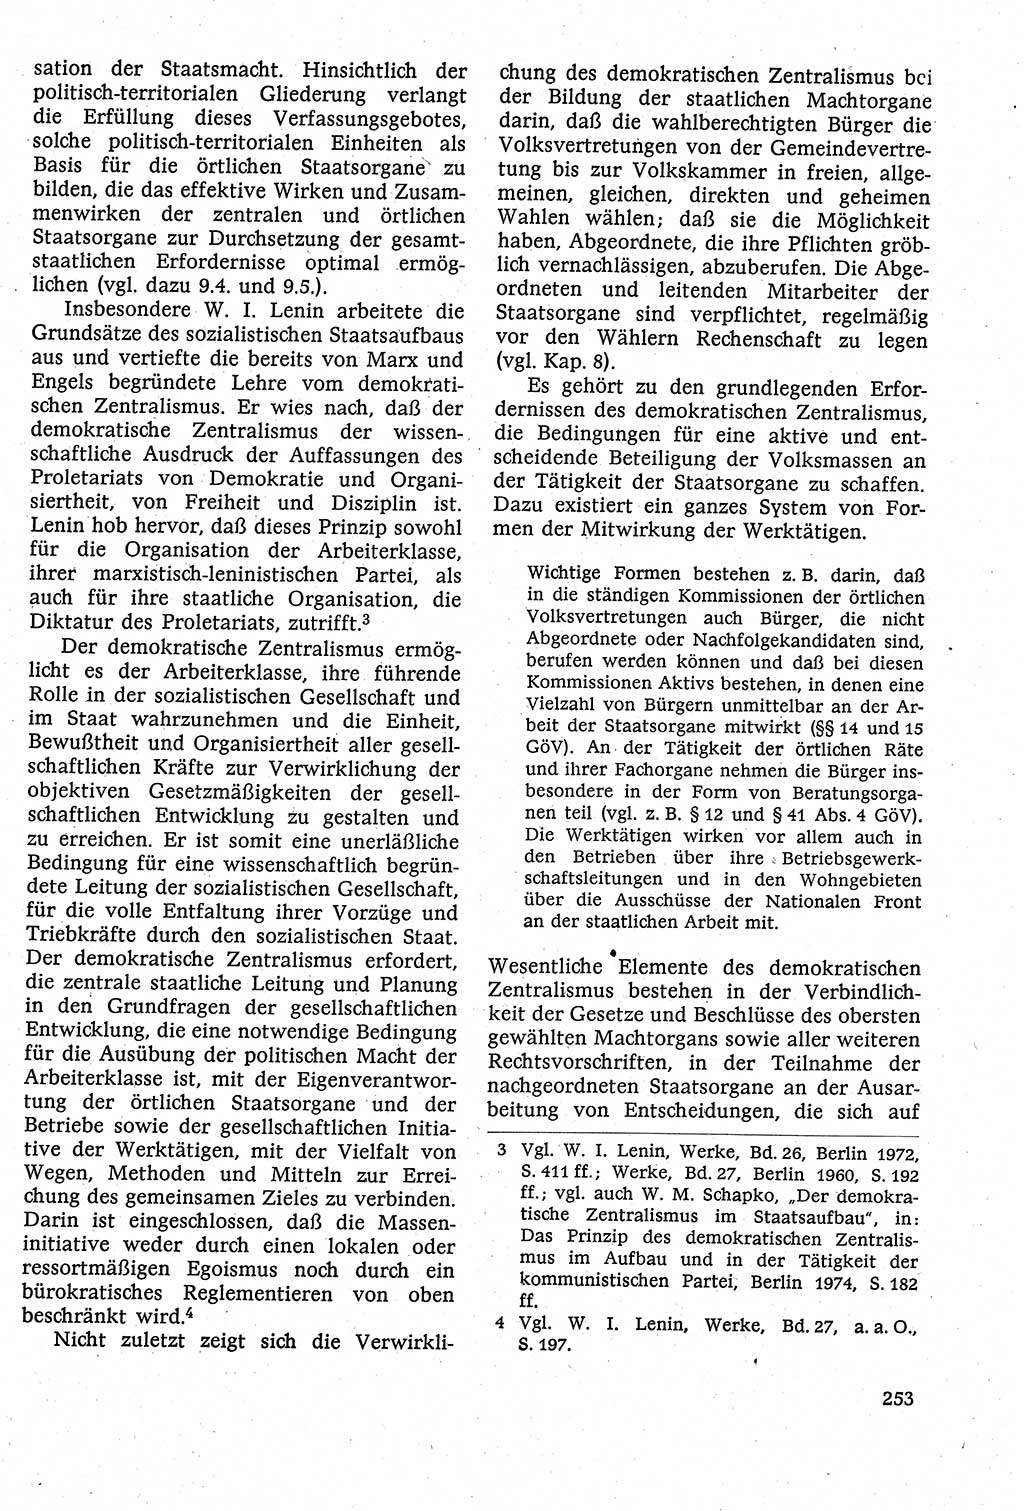 Staatsrecht der DDR [Deutsche Demokratische Republik (DDR)], Lehrbuch 1984, Seite 253 (St.-R. DDR Lb. 1984, S. 253)